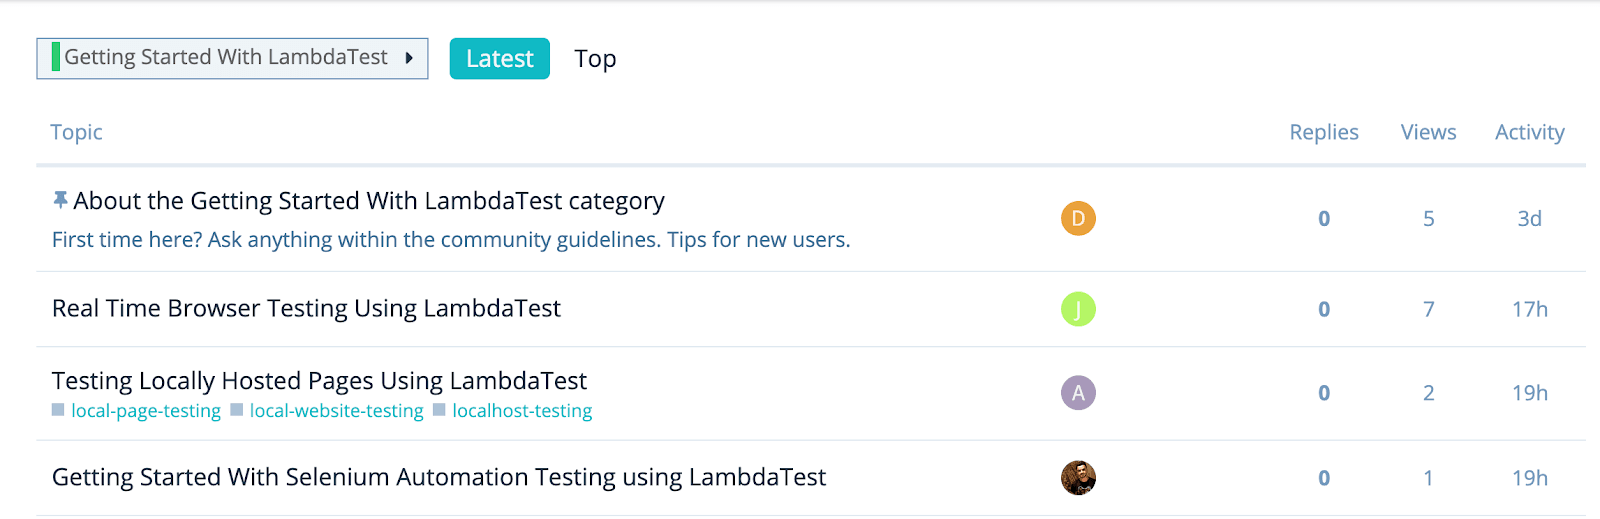 lambdatest-community-launch